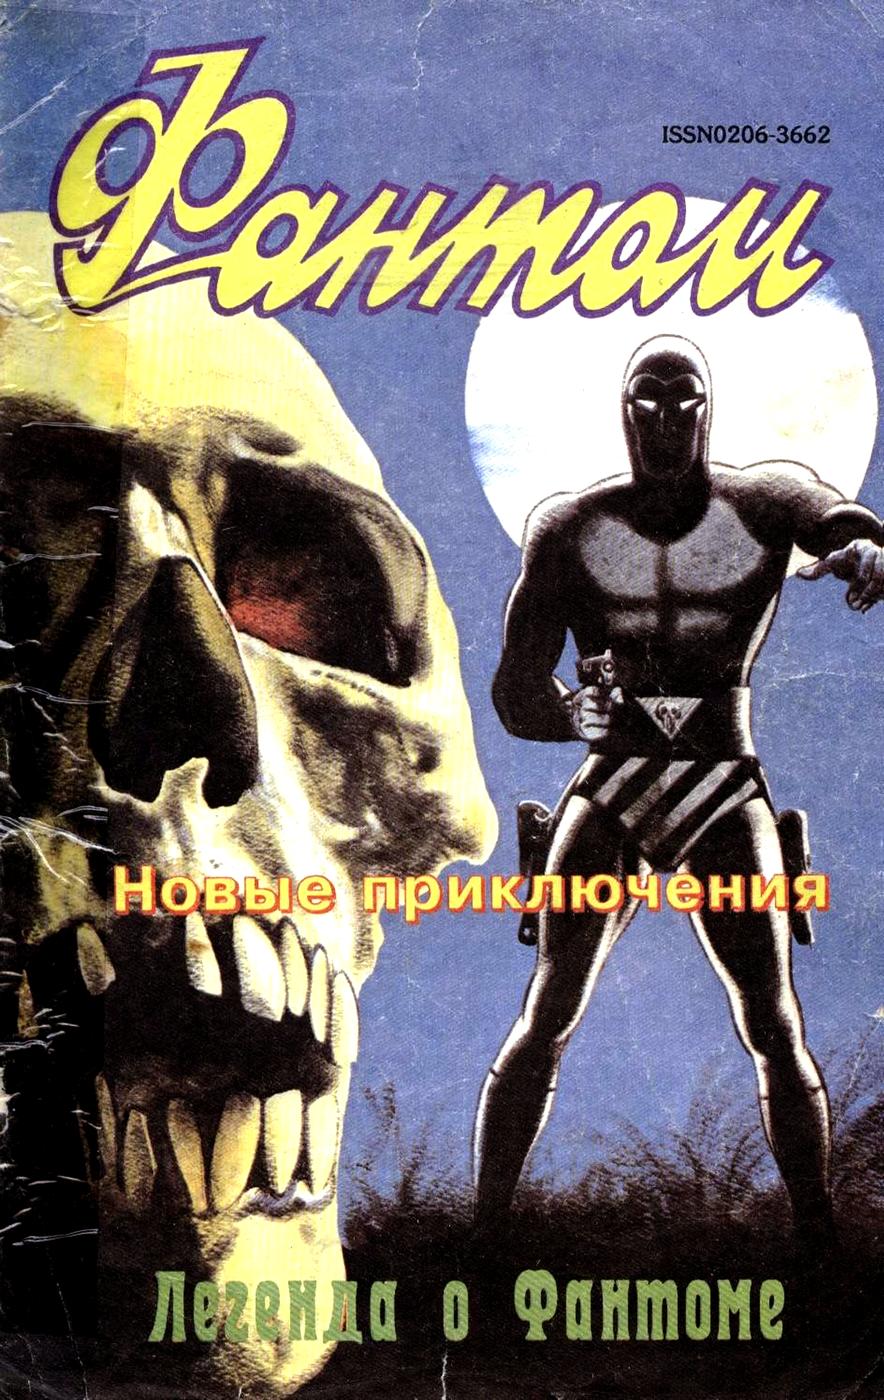 Комикс Фантом #3-1993